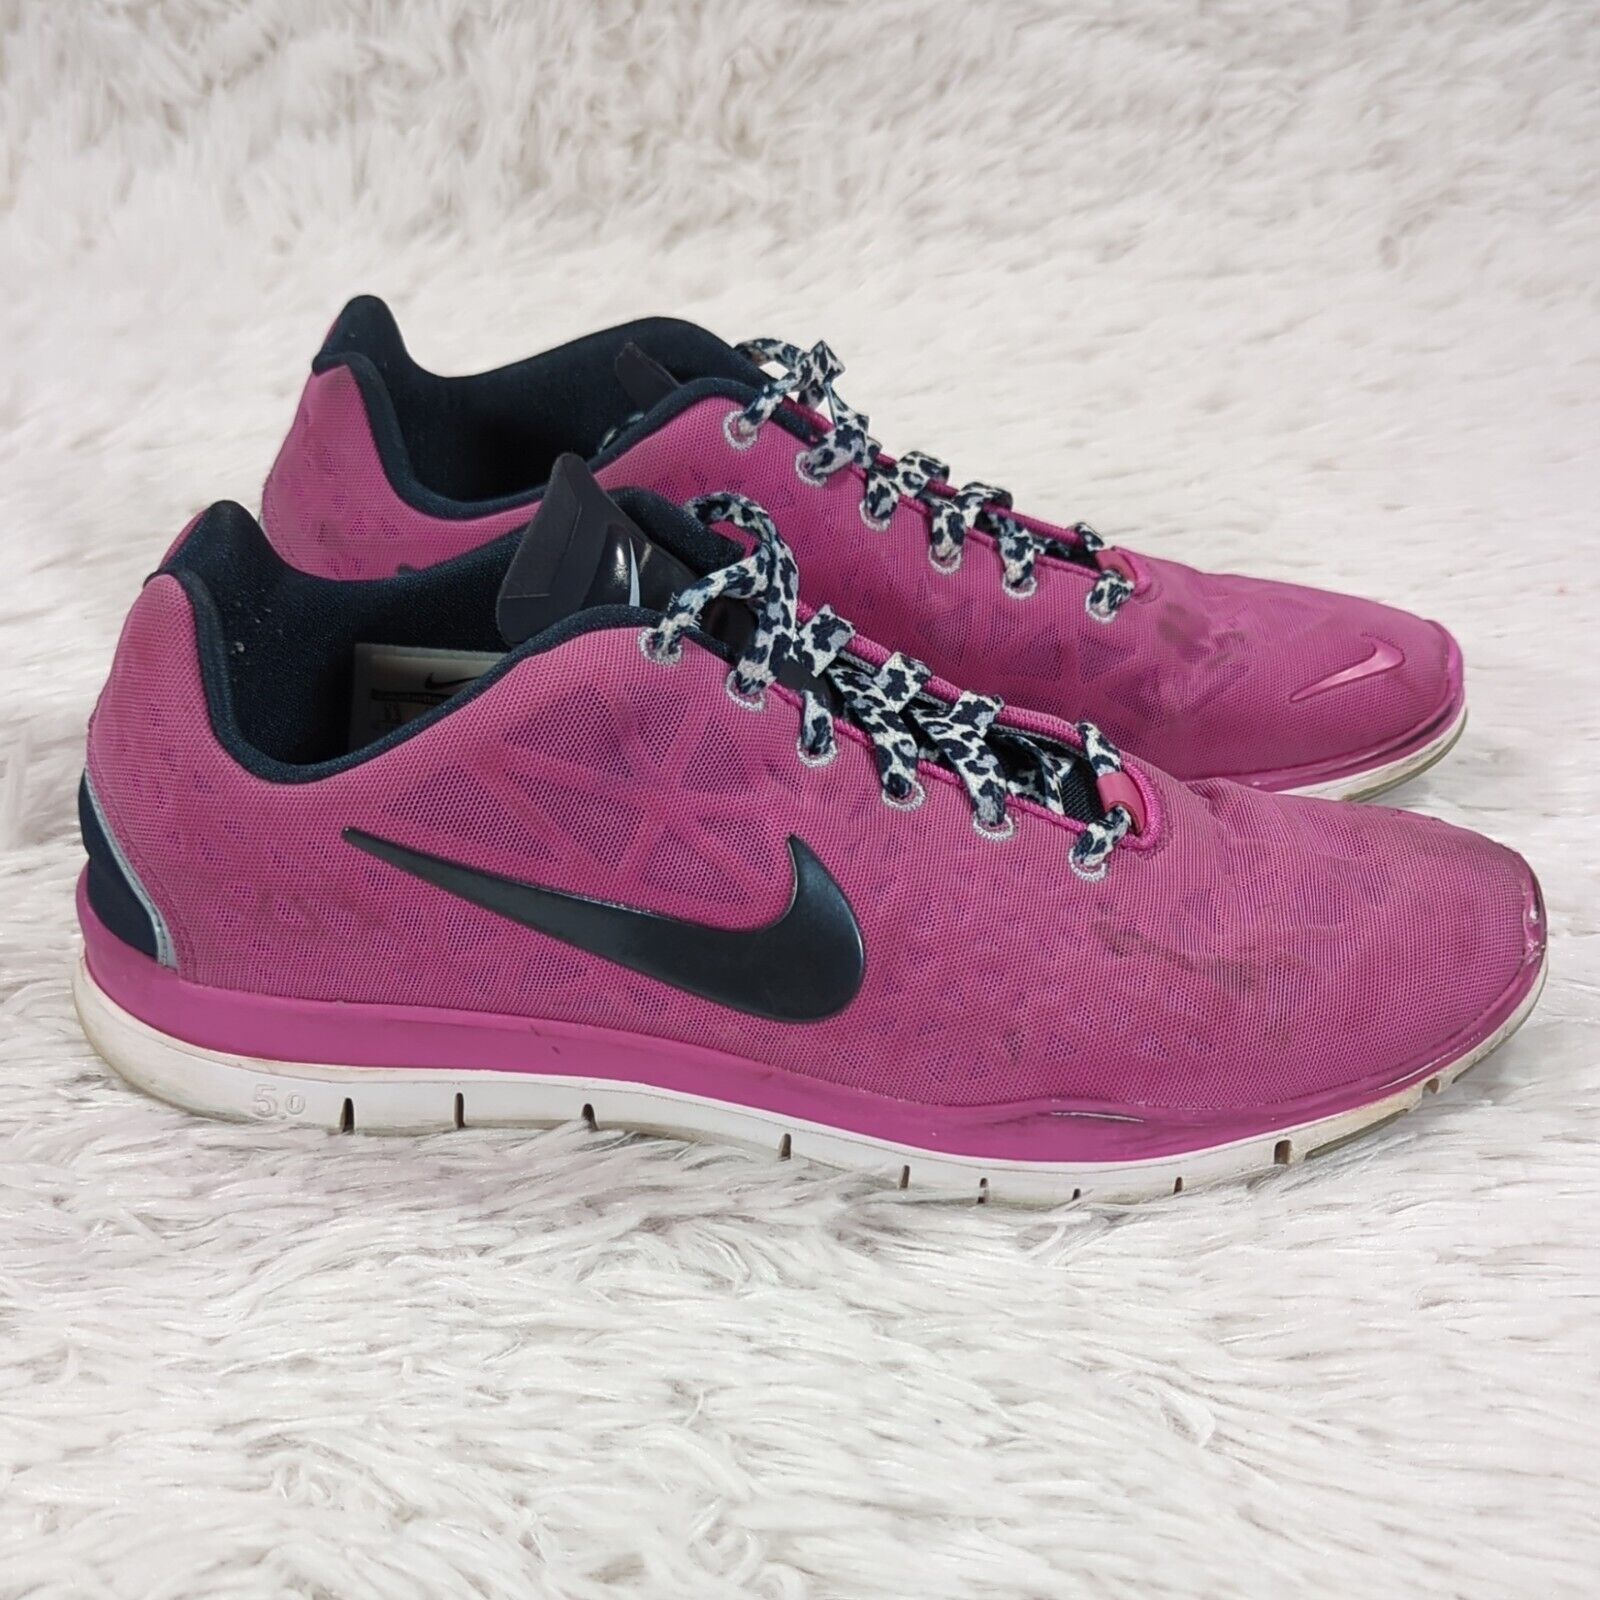 Wakker worden film zoogdier Women's Nike Free TR Fit 3 Running Shoes Pink Size 9.5 555158-602 | eBay